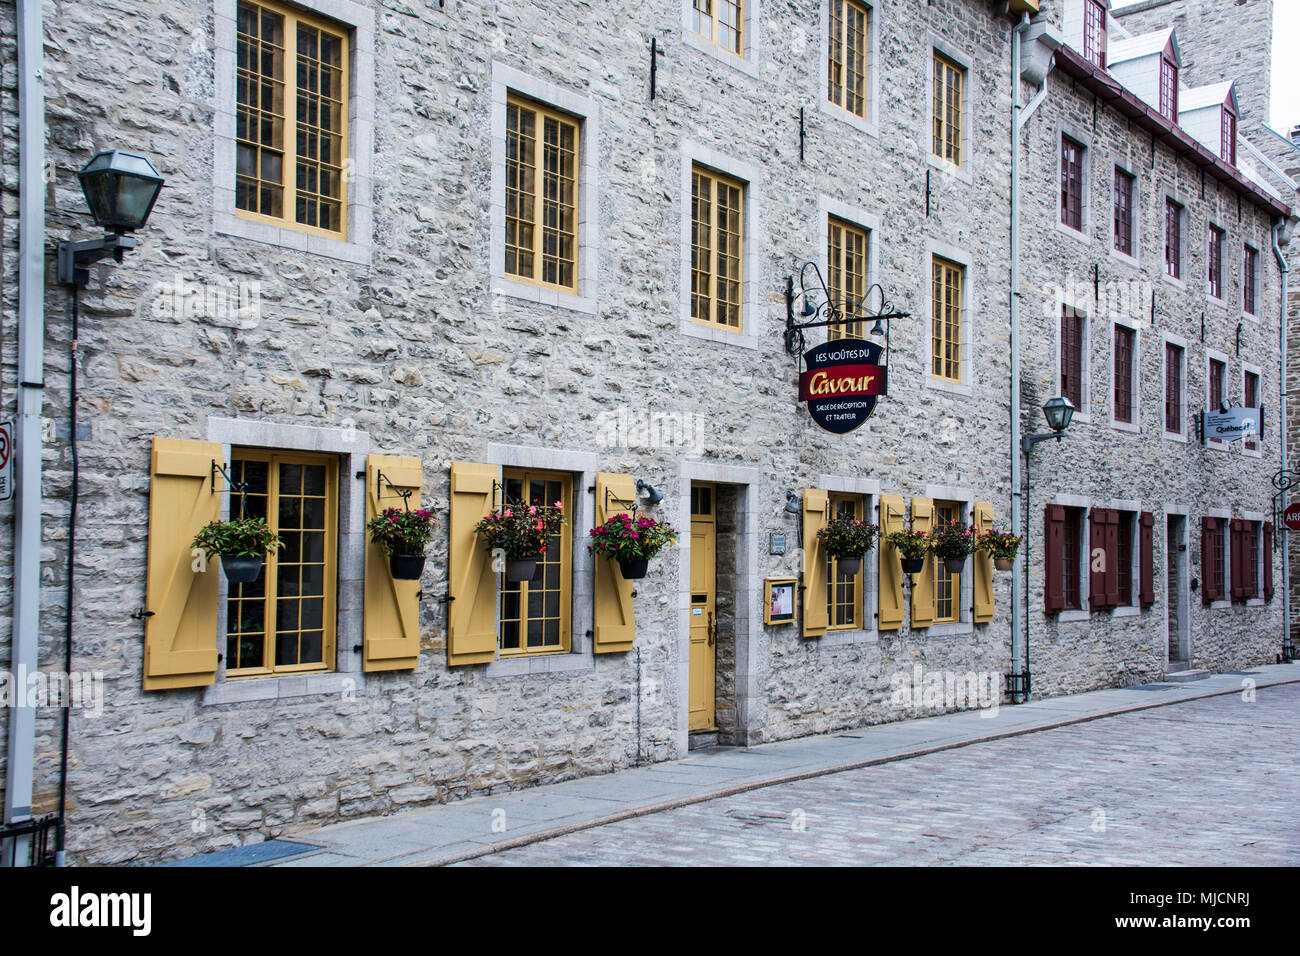 Maisons en pierre typique de la Basse Ville (Basse-Ville) de la ville de Québec Banque D'Images